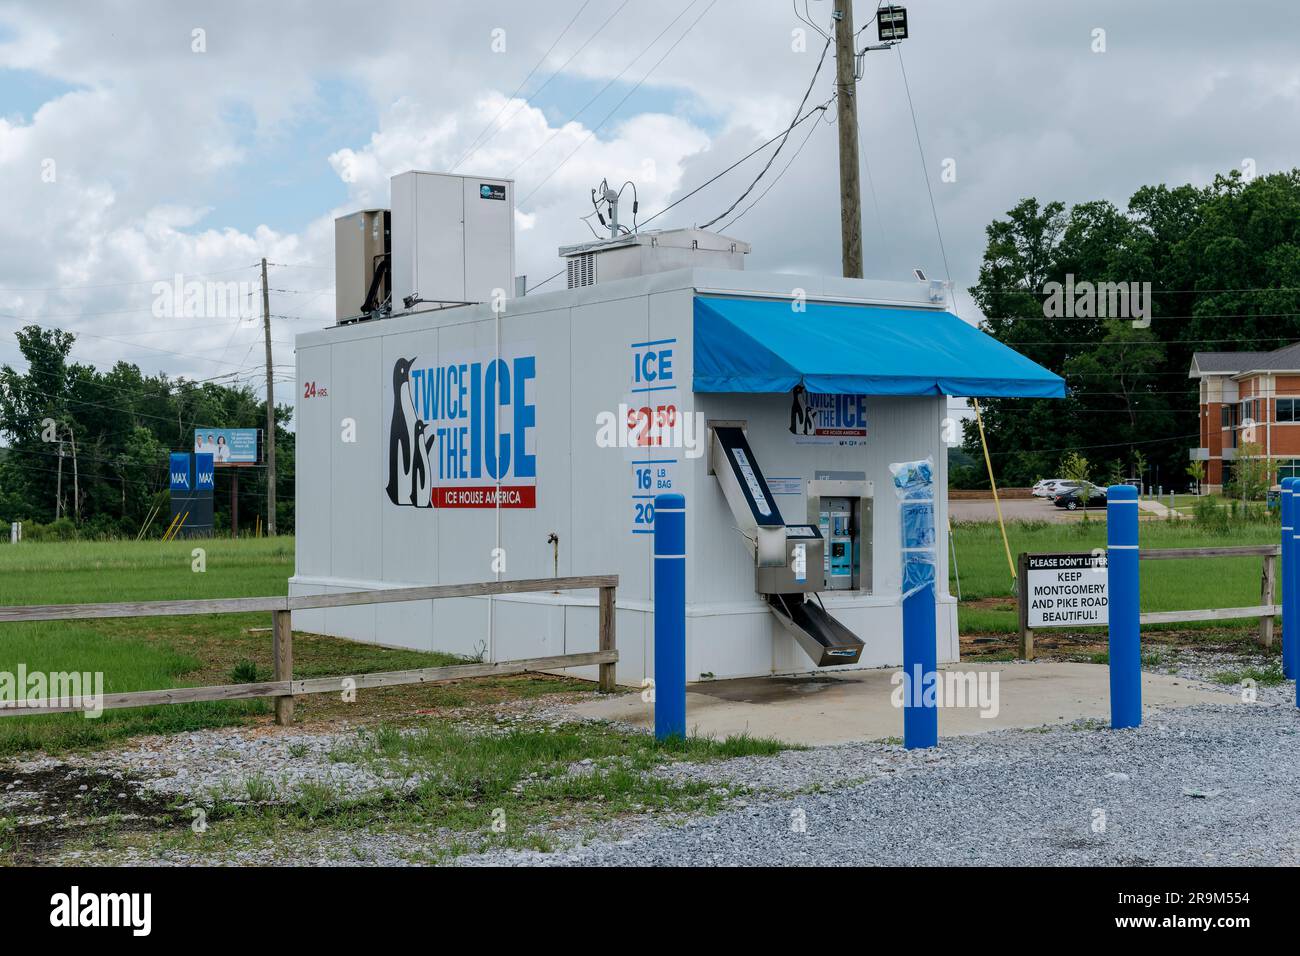 Große eigenständige Eismaschine für Do-it-yourself-Käufe von Eis in Taschen, die während der heißen Sommermonate in Montgomery, Alabama, USA, am beliebtesten sind. Stockfoto